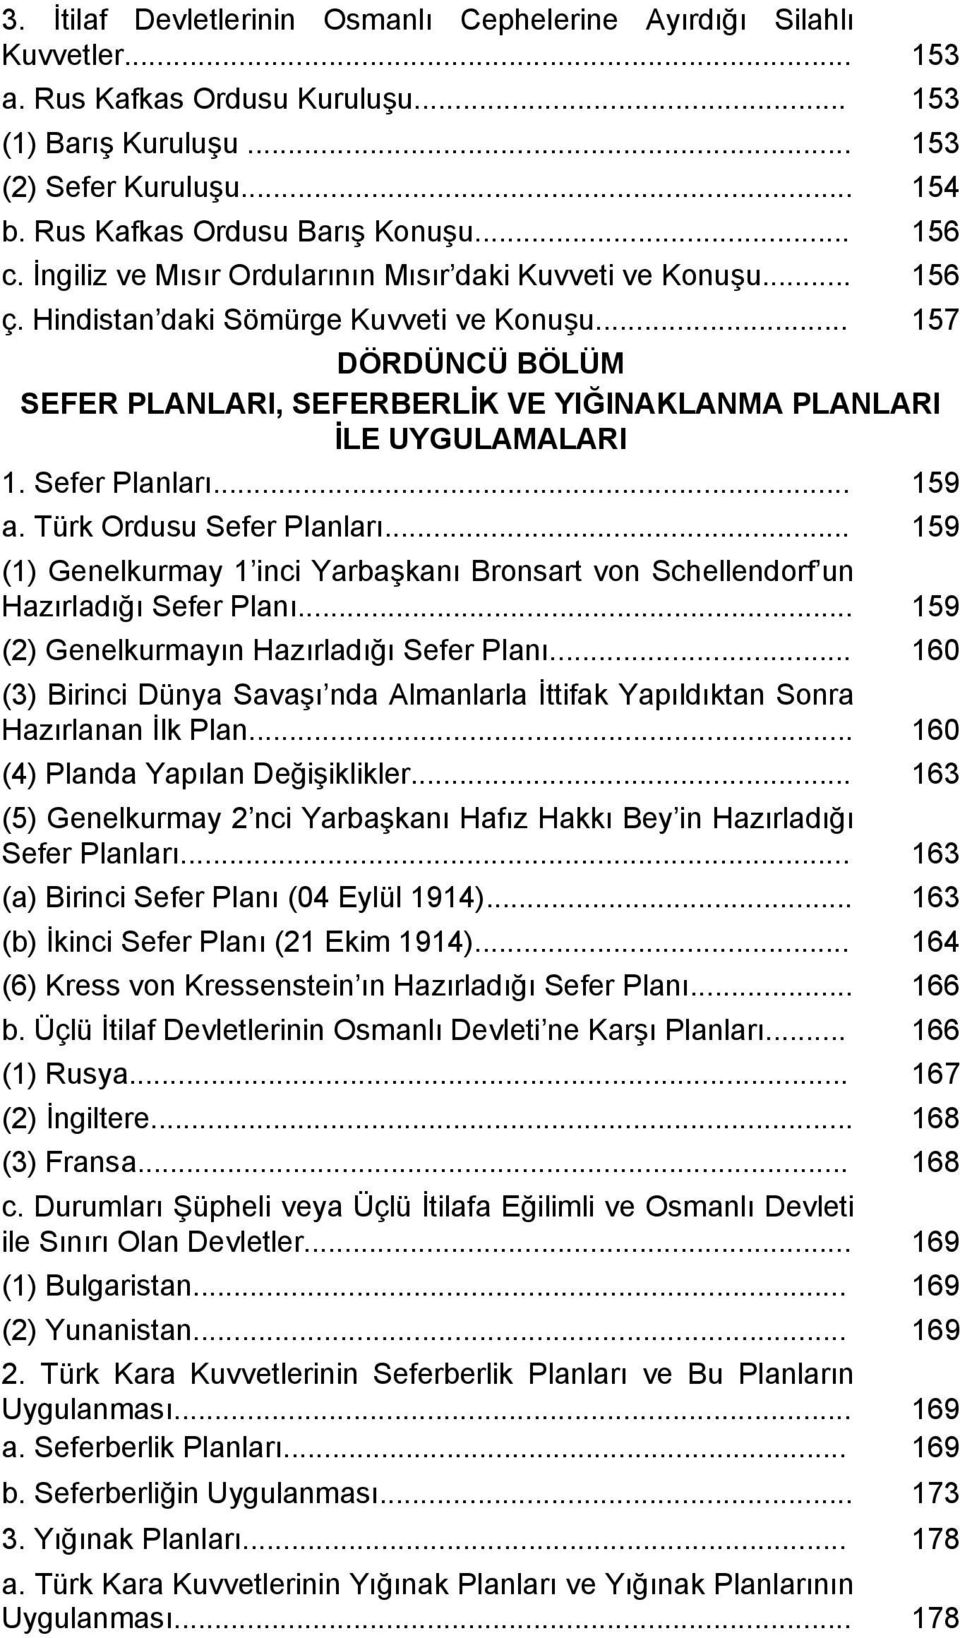 .. 157 DÖRDÜNCÜ BÖLÜM SEFER PLANLARI, SEFERBERLİK VE YIĞINAKLANMA PLANLARI İLE UYGULAMALARI 1. Sefer Planları... 159 a. Türk Ordusu Sefer Planları.